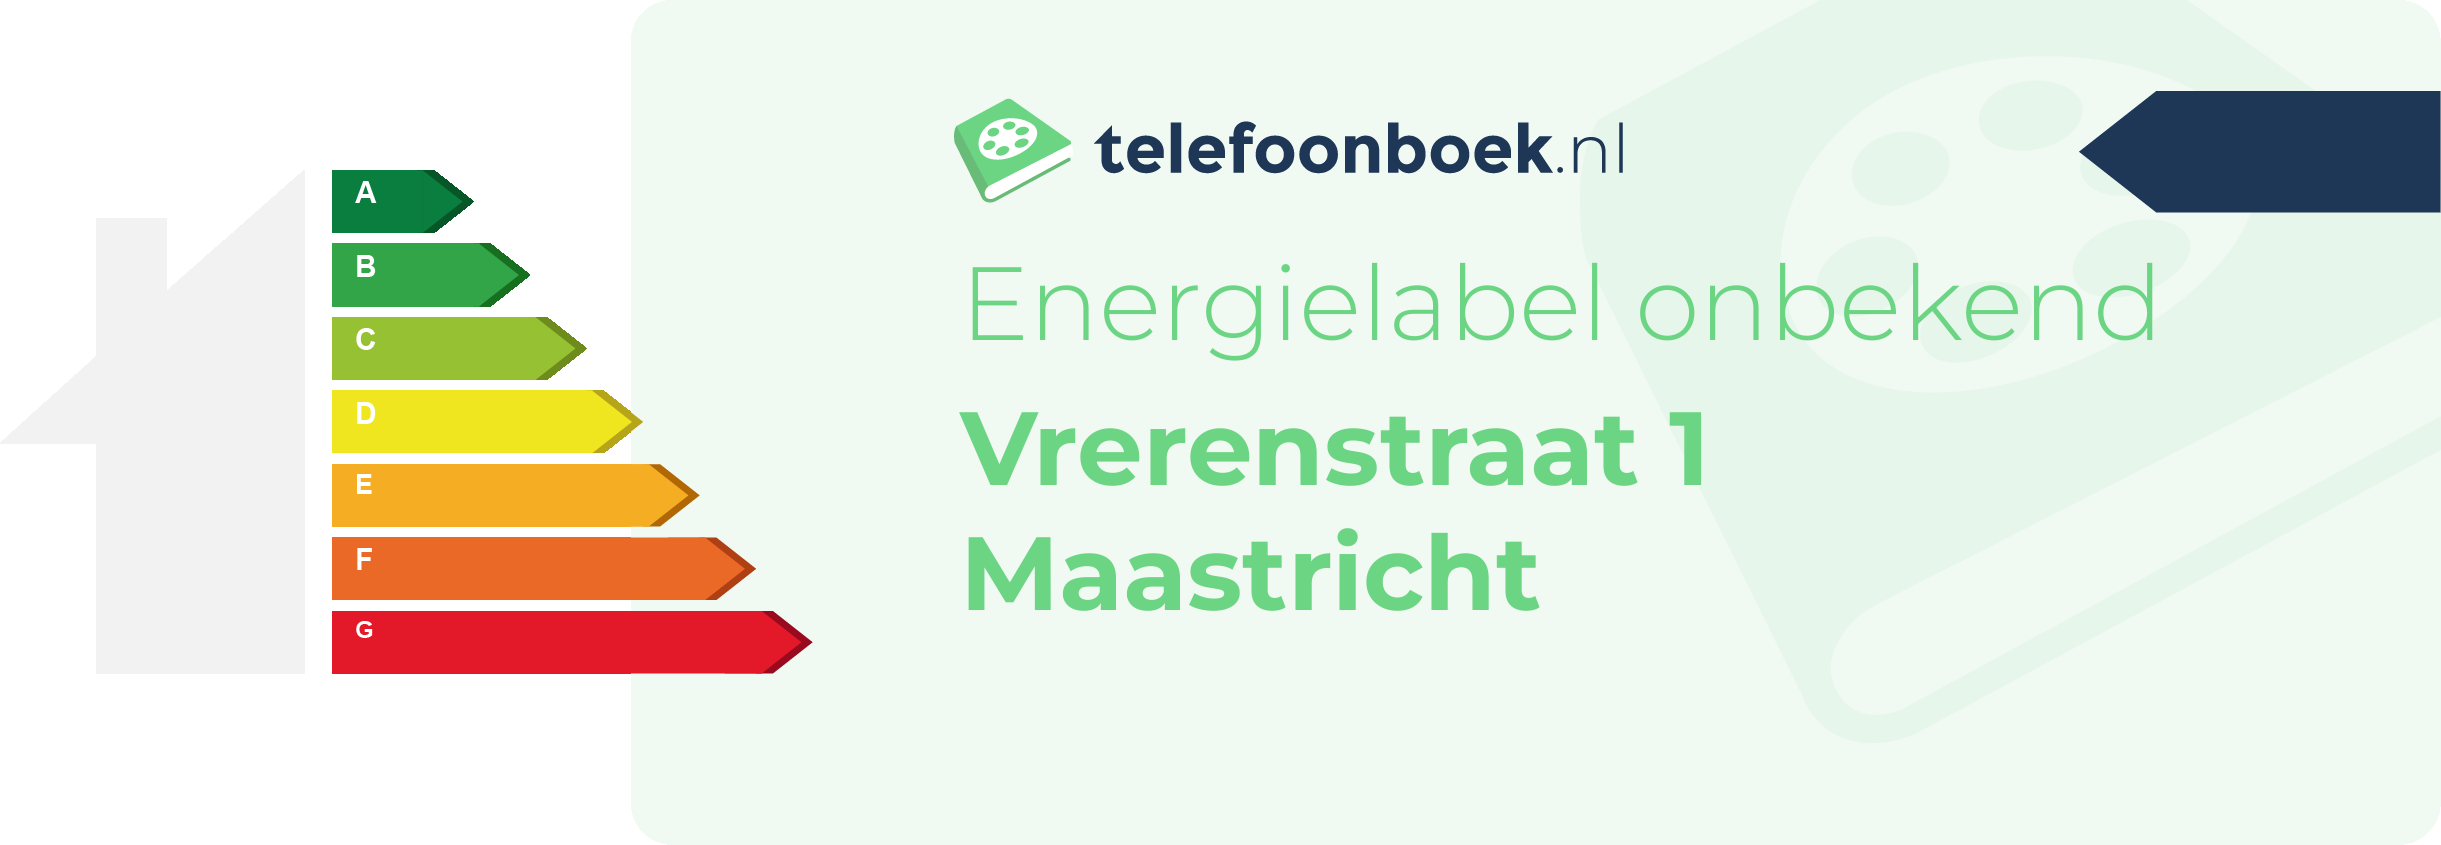 Energielabel Vrerenstraat 1 Maastricht